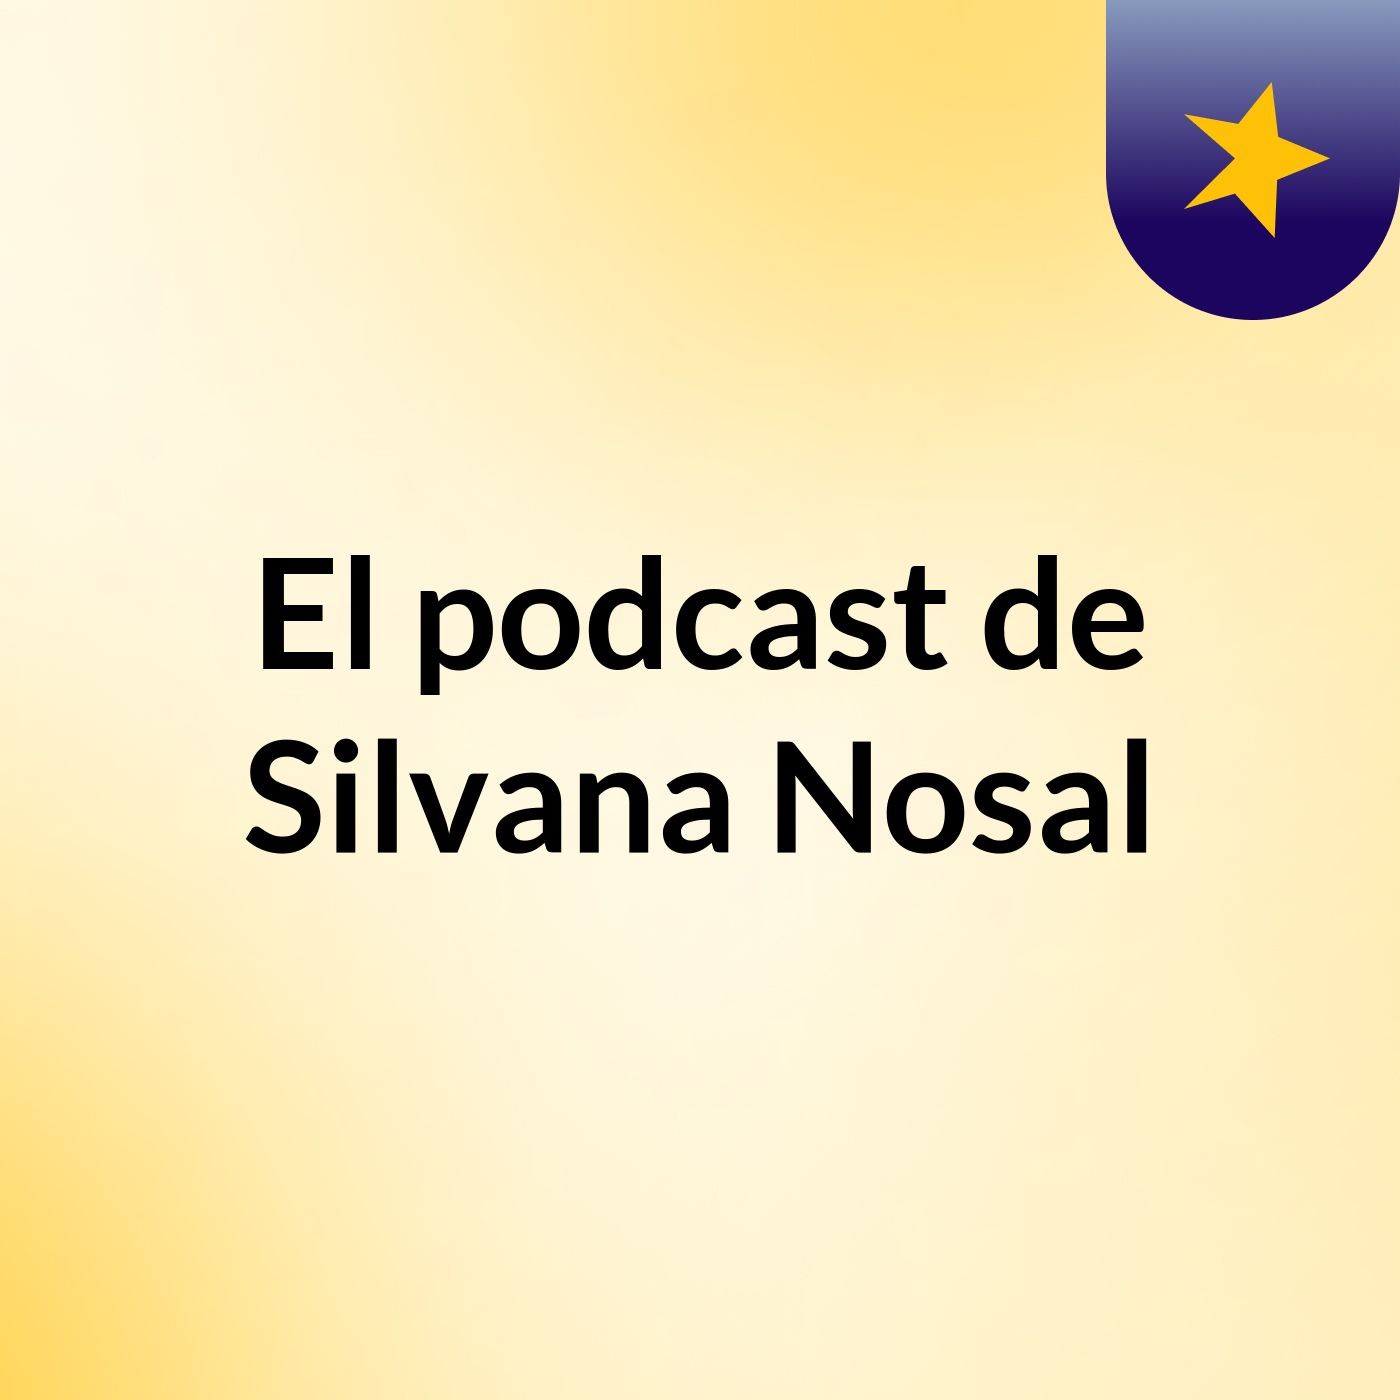 El podcast de Silvana Nosal